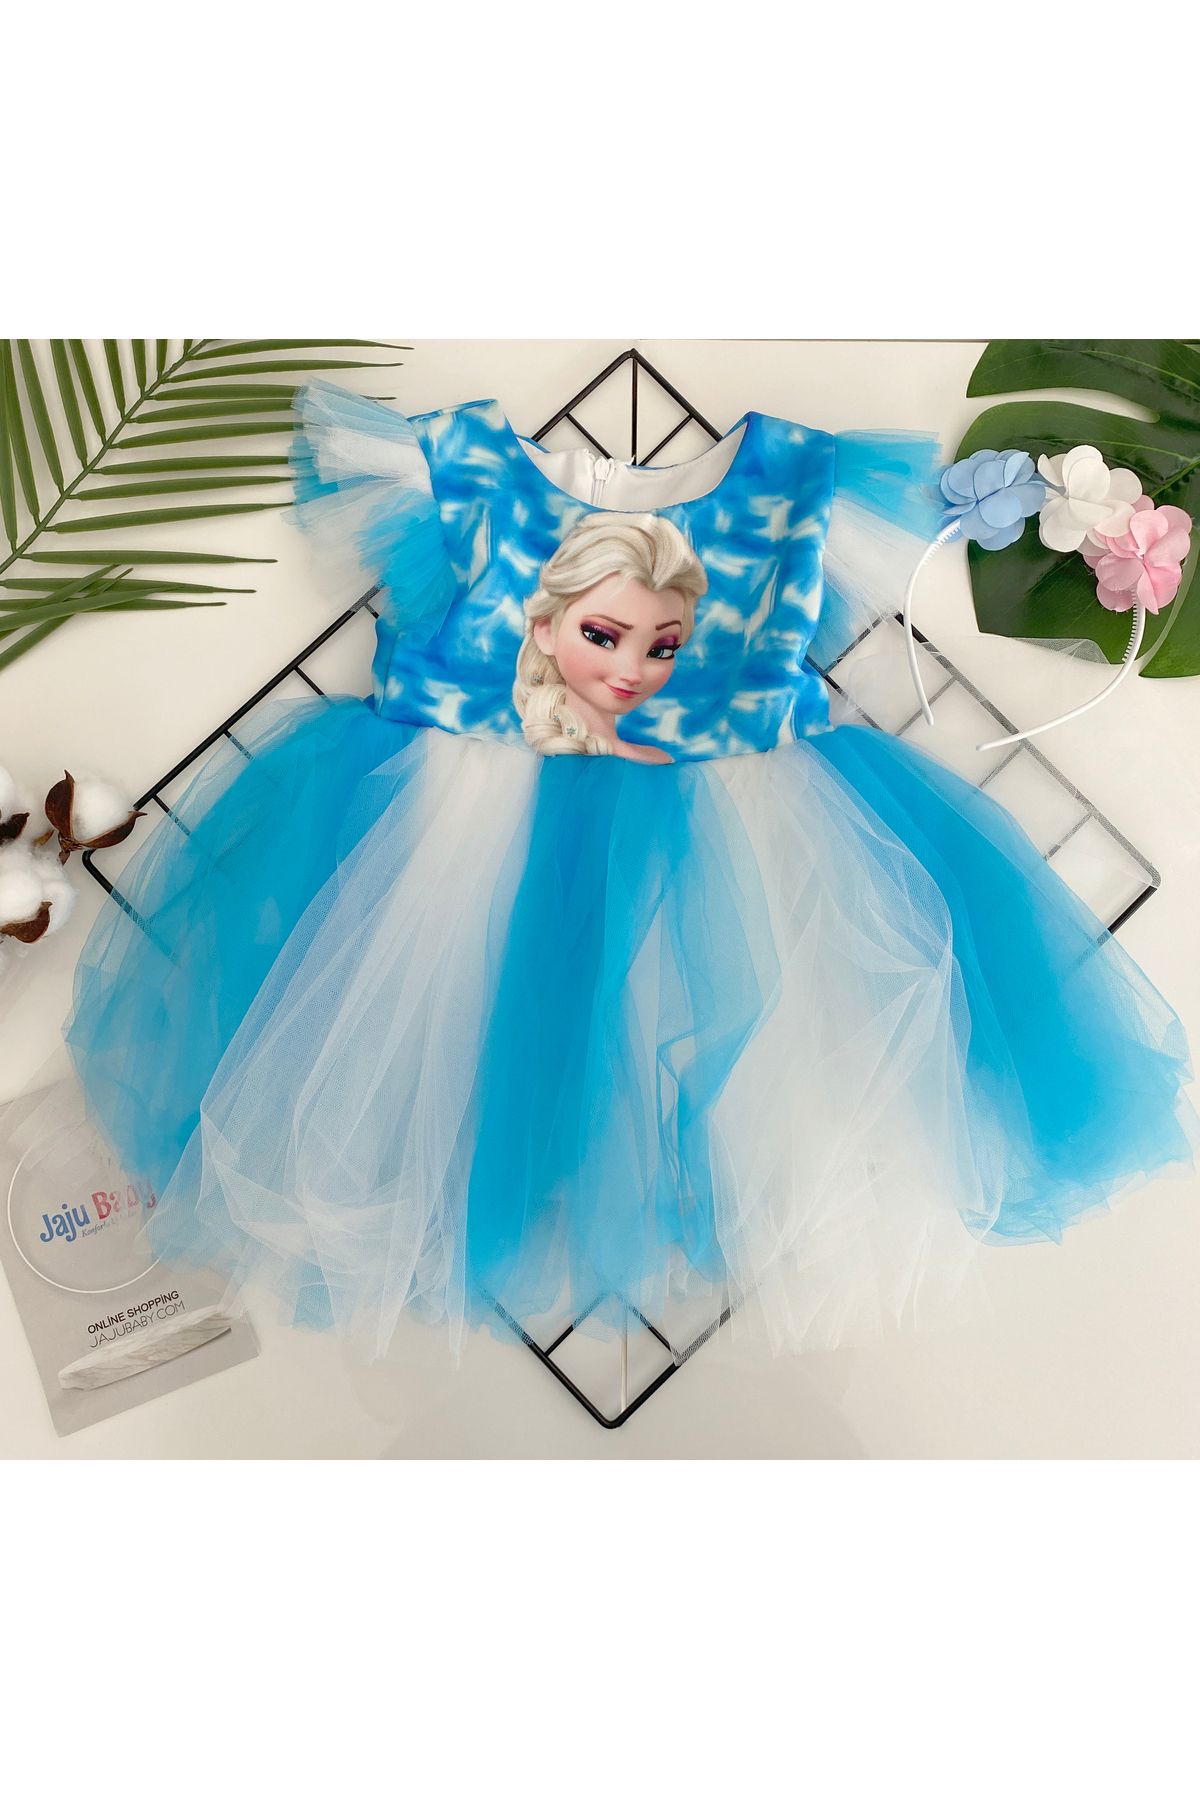 Jaju Baby Kız Çocuk Elsa Mavi Tüllü Elbise Ve Taç